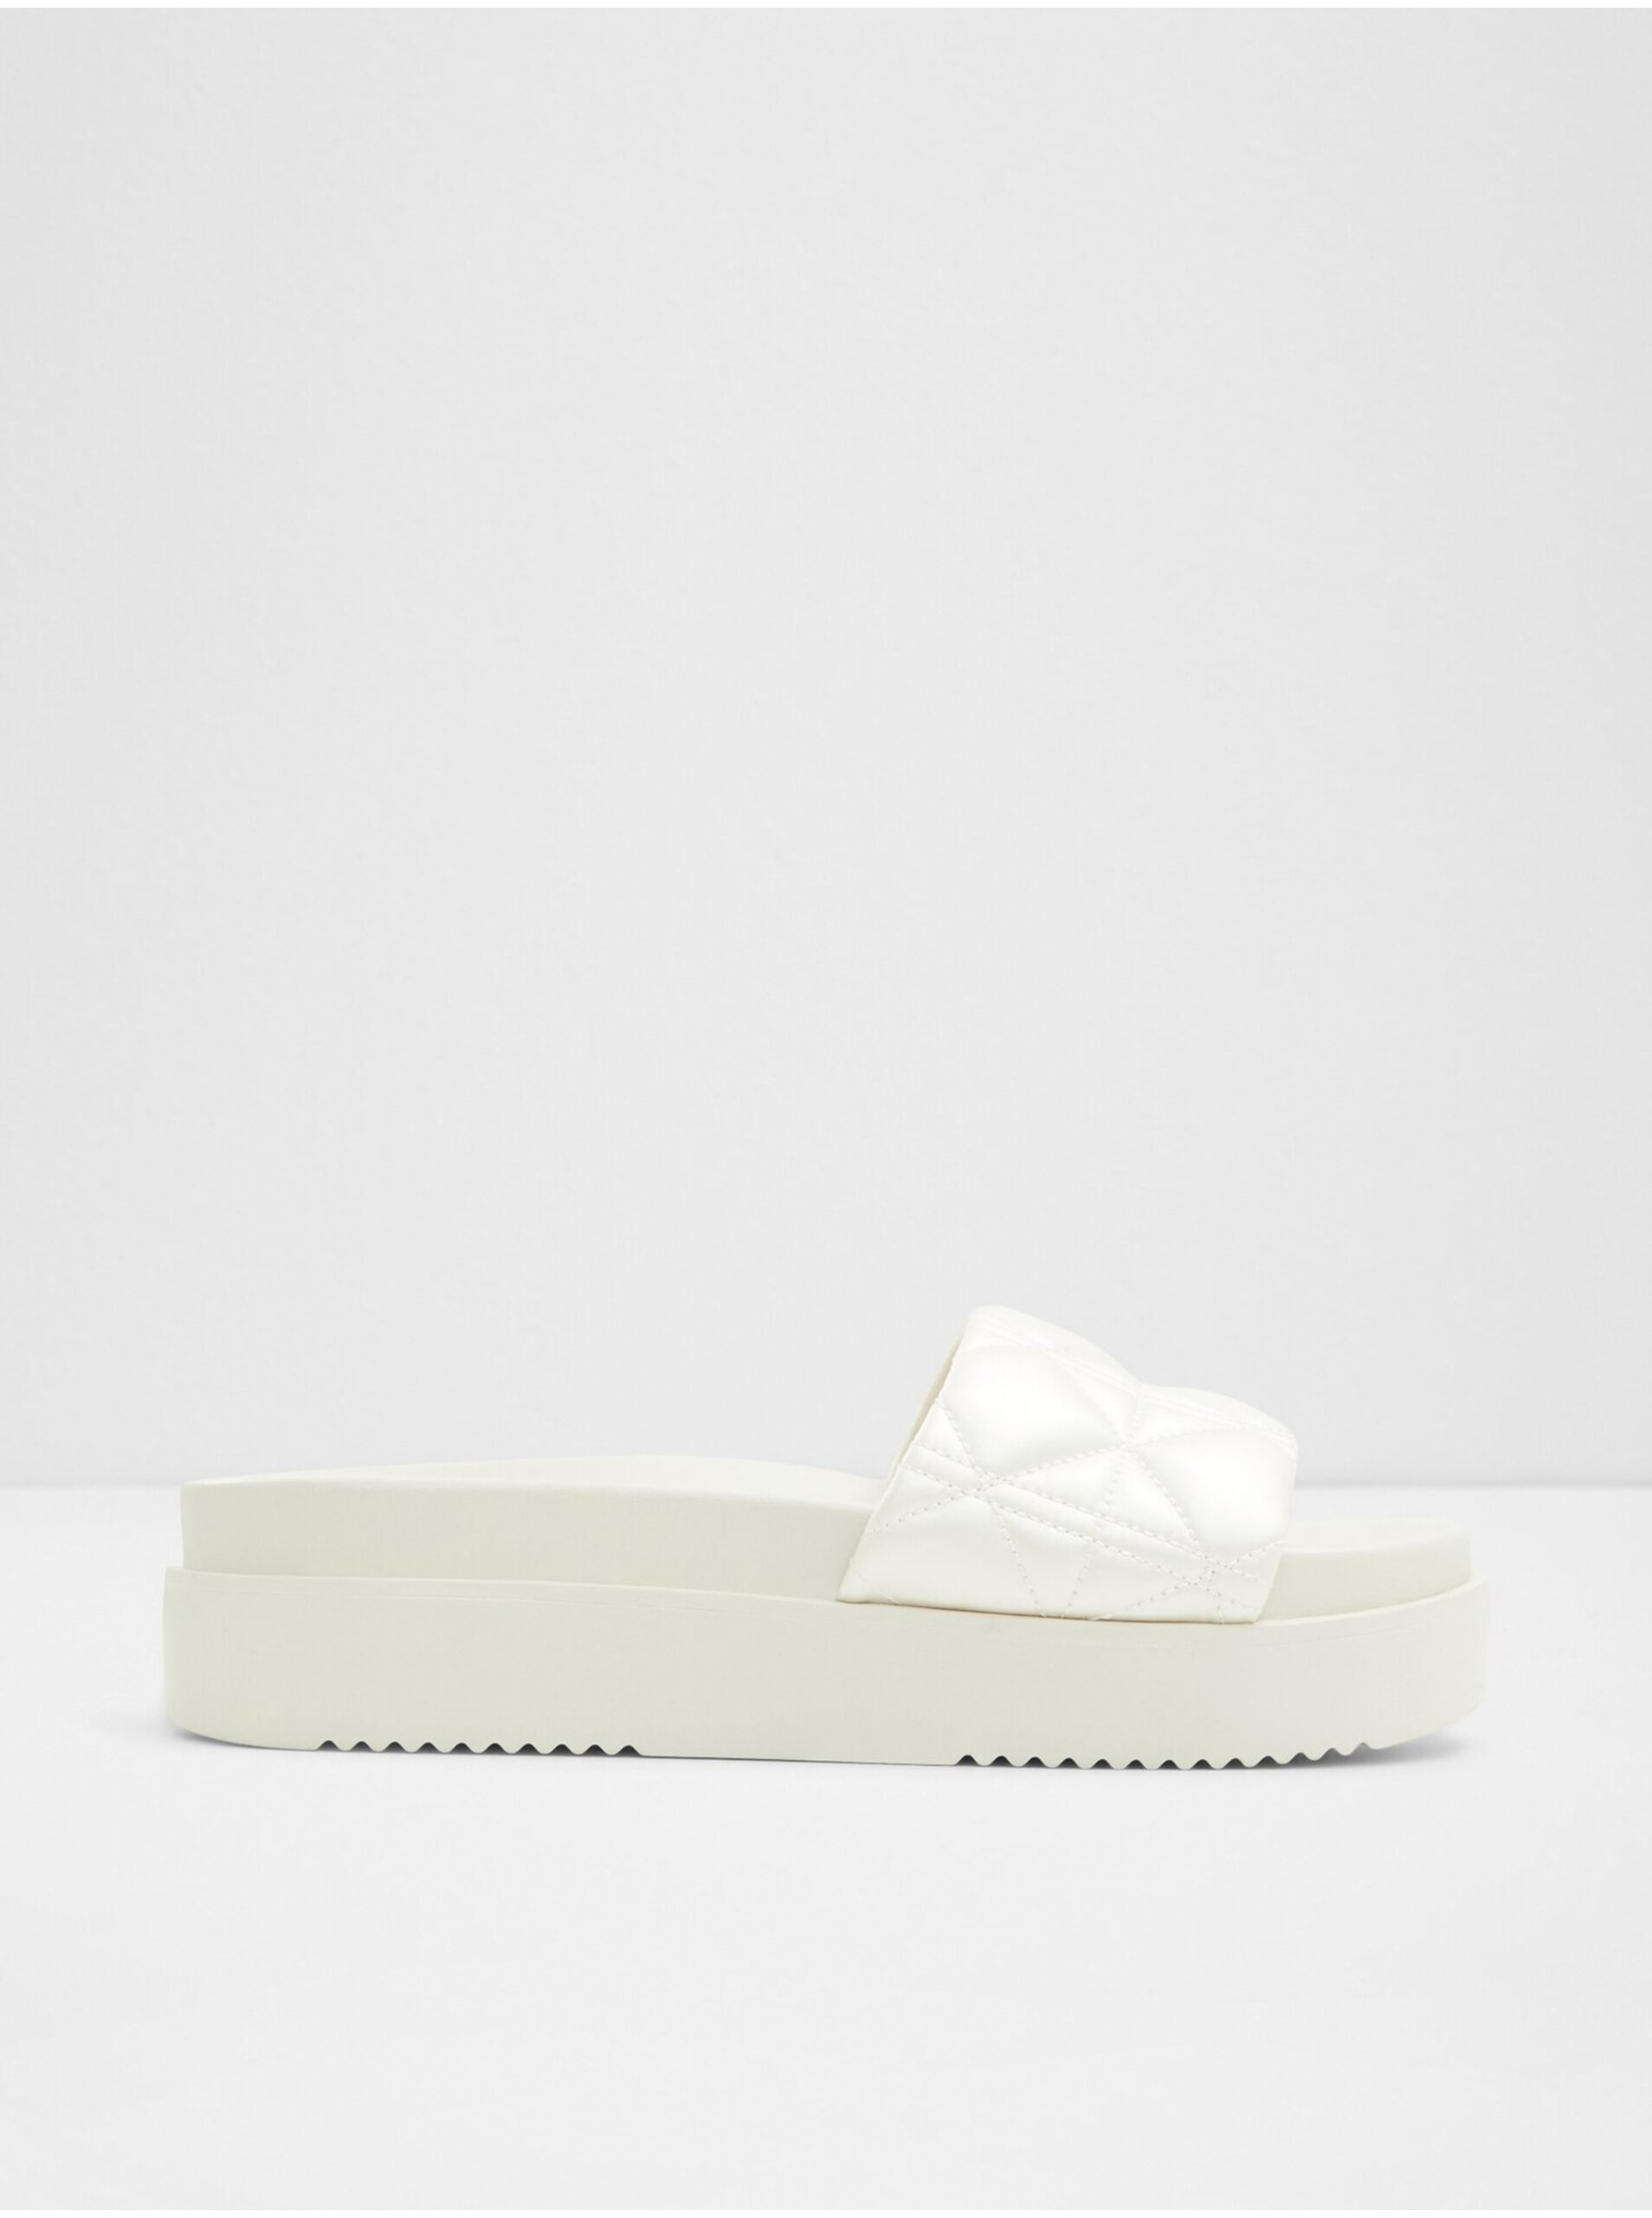 E-shop Bílé dámské pantofle ALDO Aquata